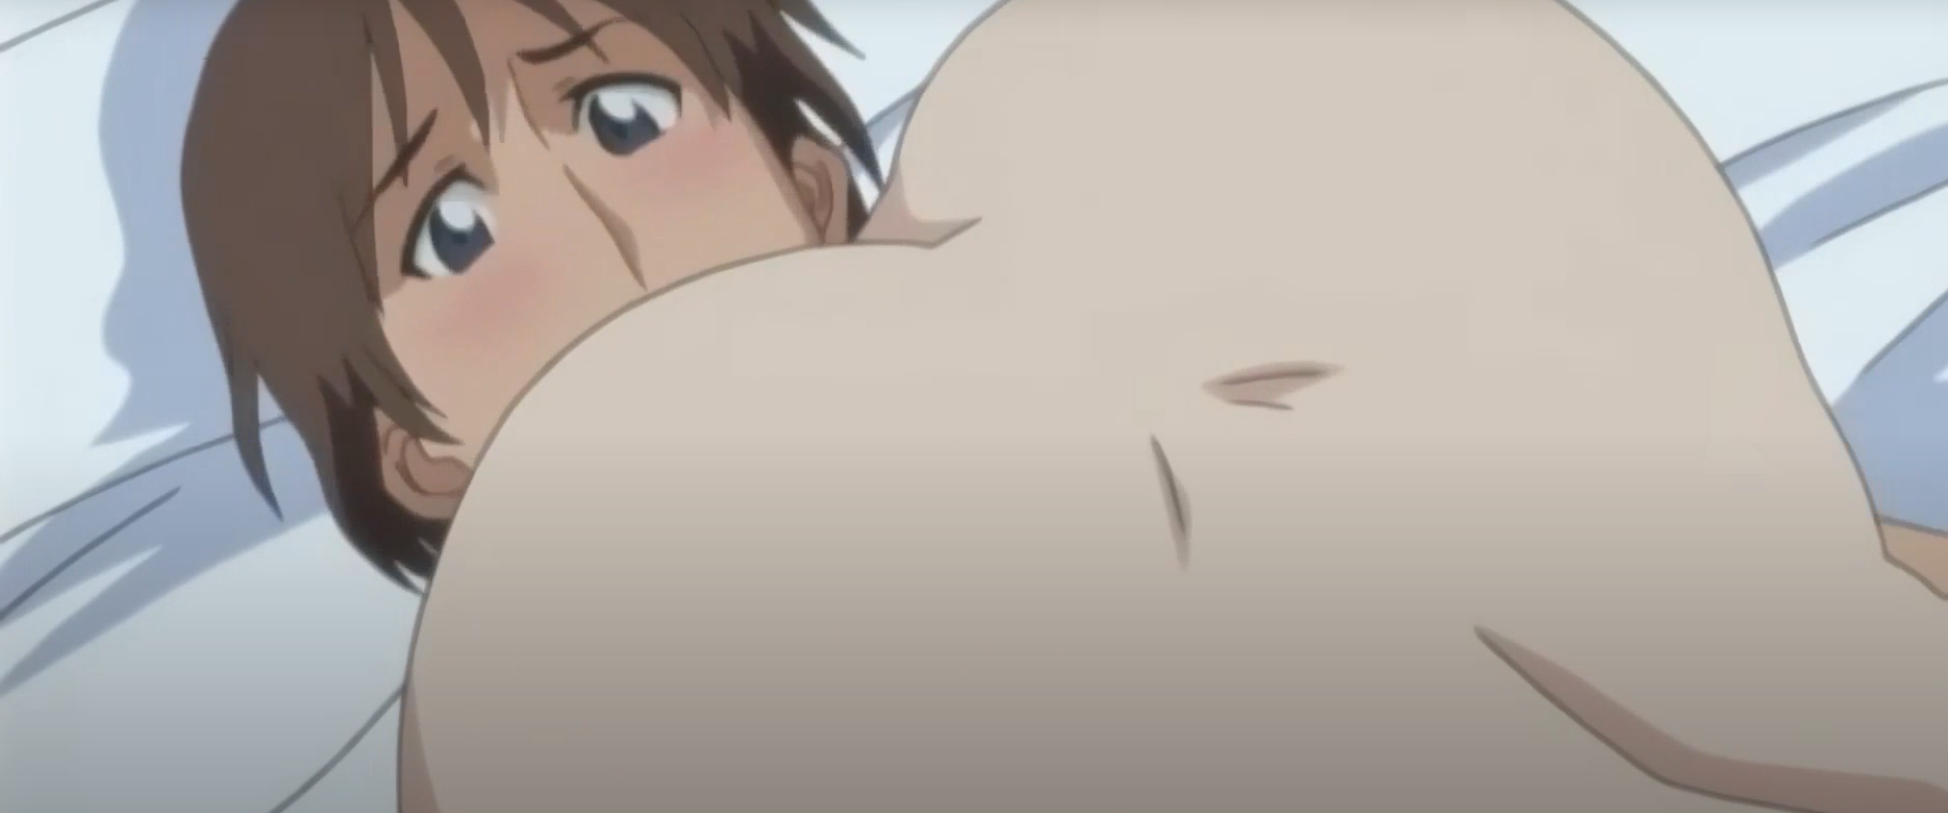 Phim sex anime học sinh